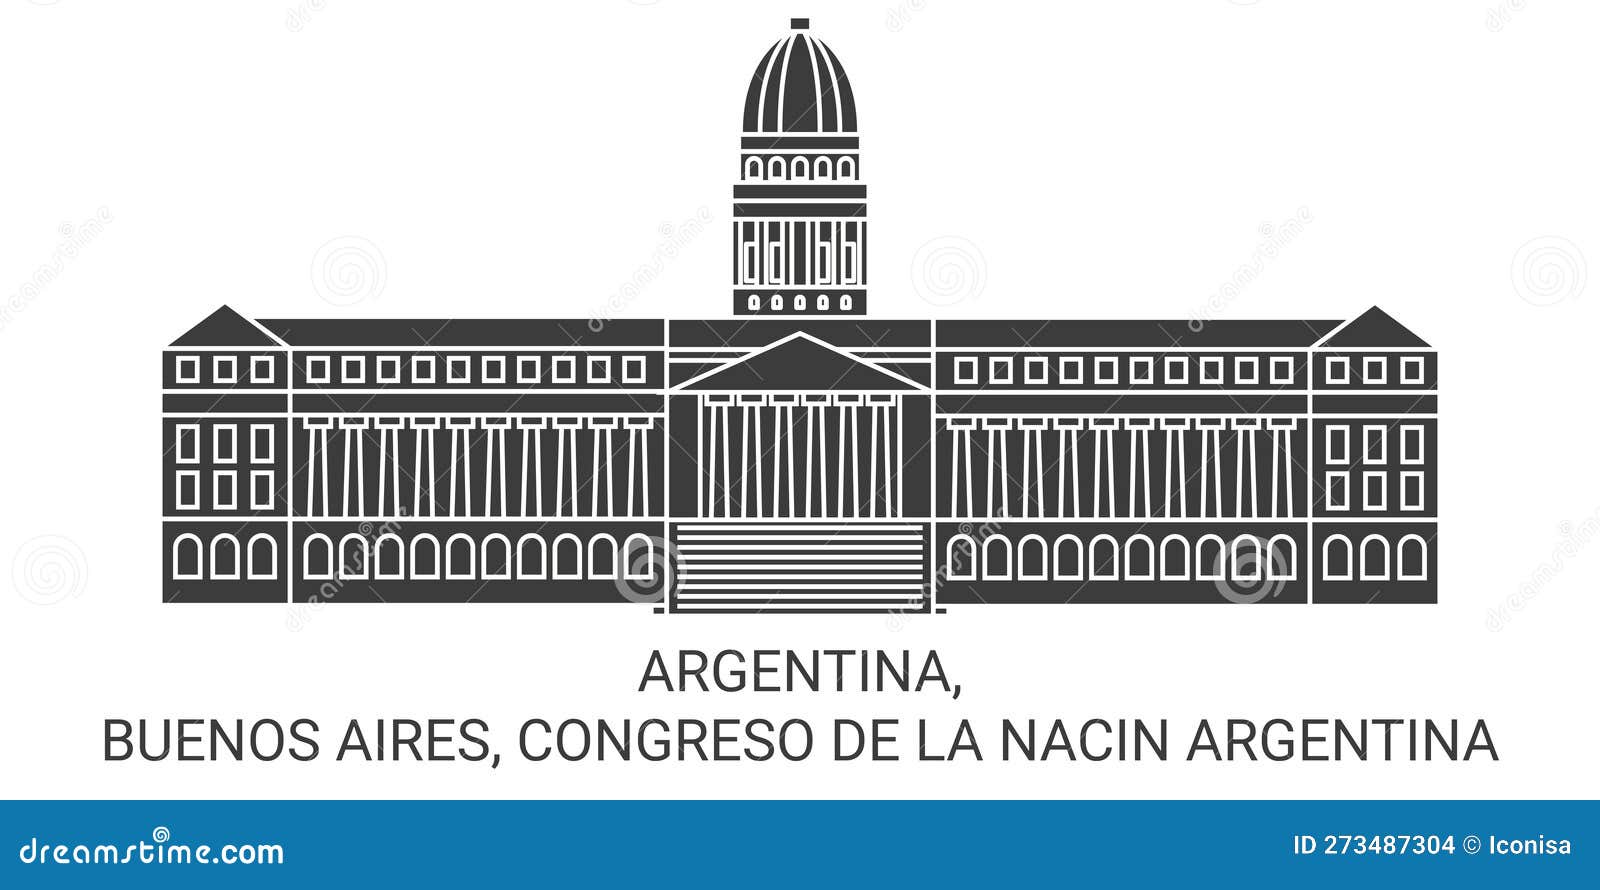 argentina, buenos aires, congreso de la nacin argentina travel landmark  